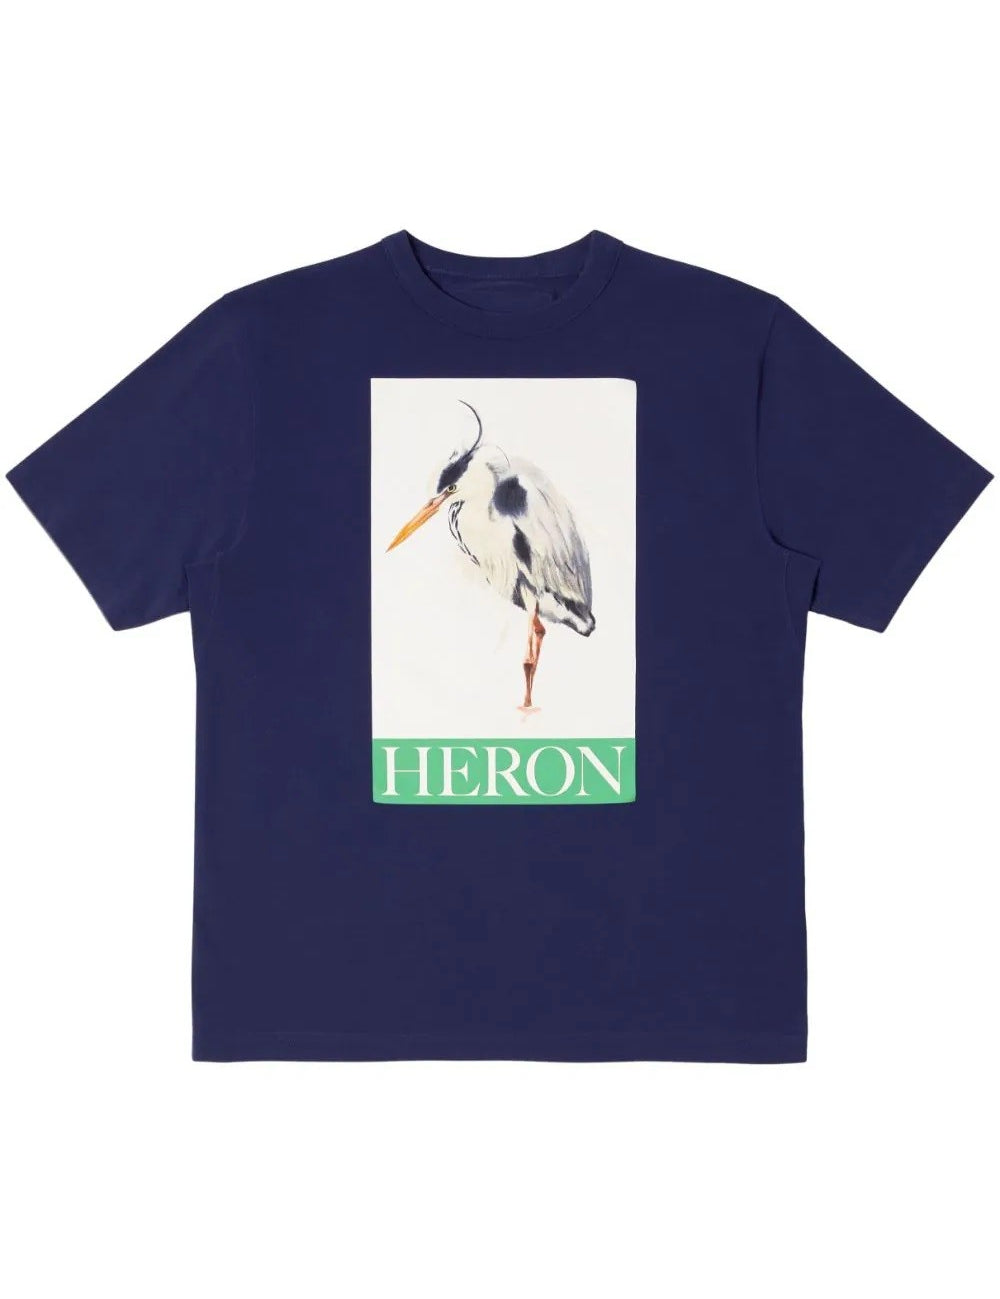 heron-bird-t-shirts_ec15615b-d81e-4108-946c-ed58b5552b3e.jpg